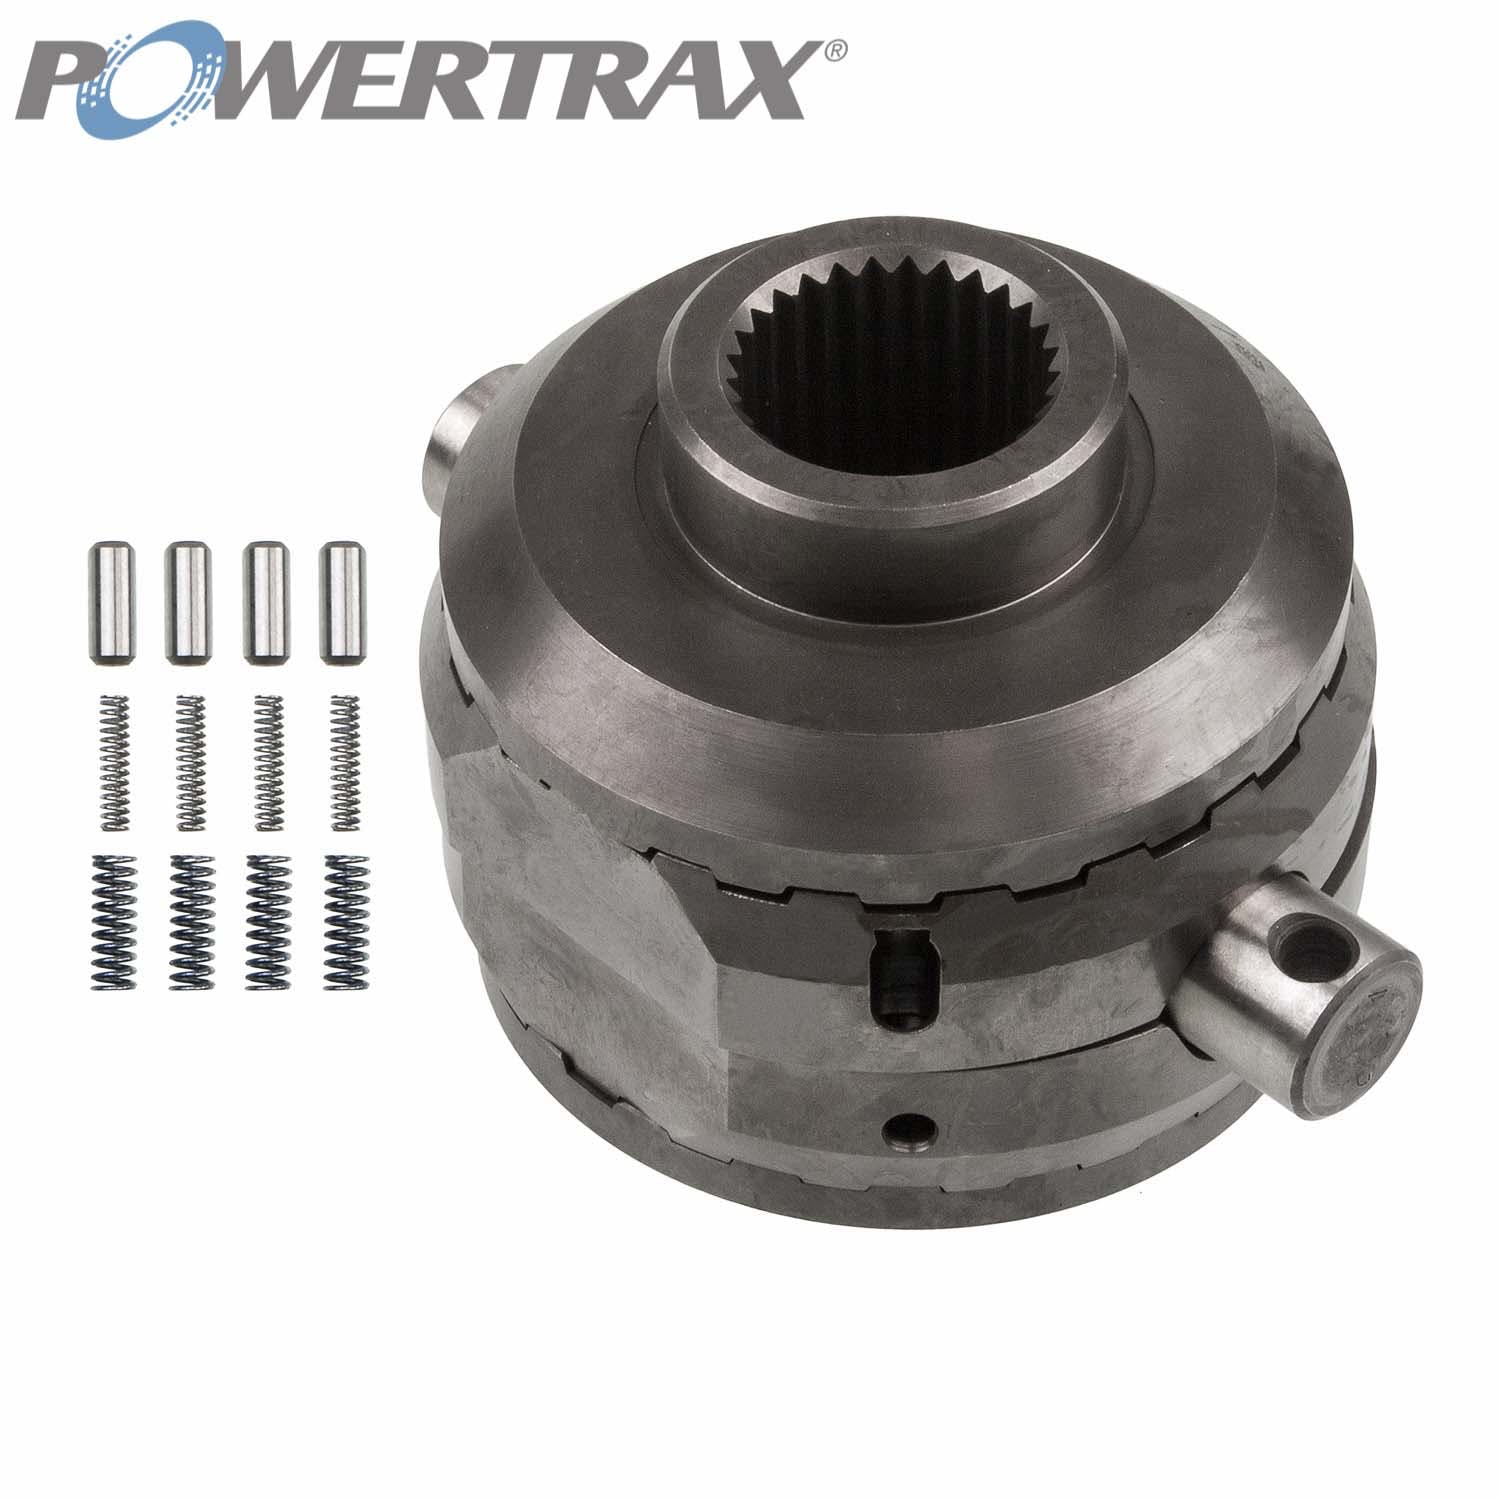 PowerTrax 1820-LR Lock Right Locker